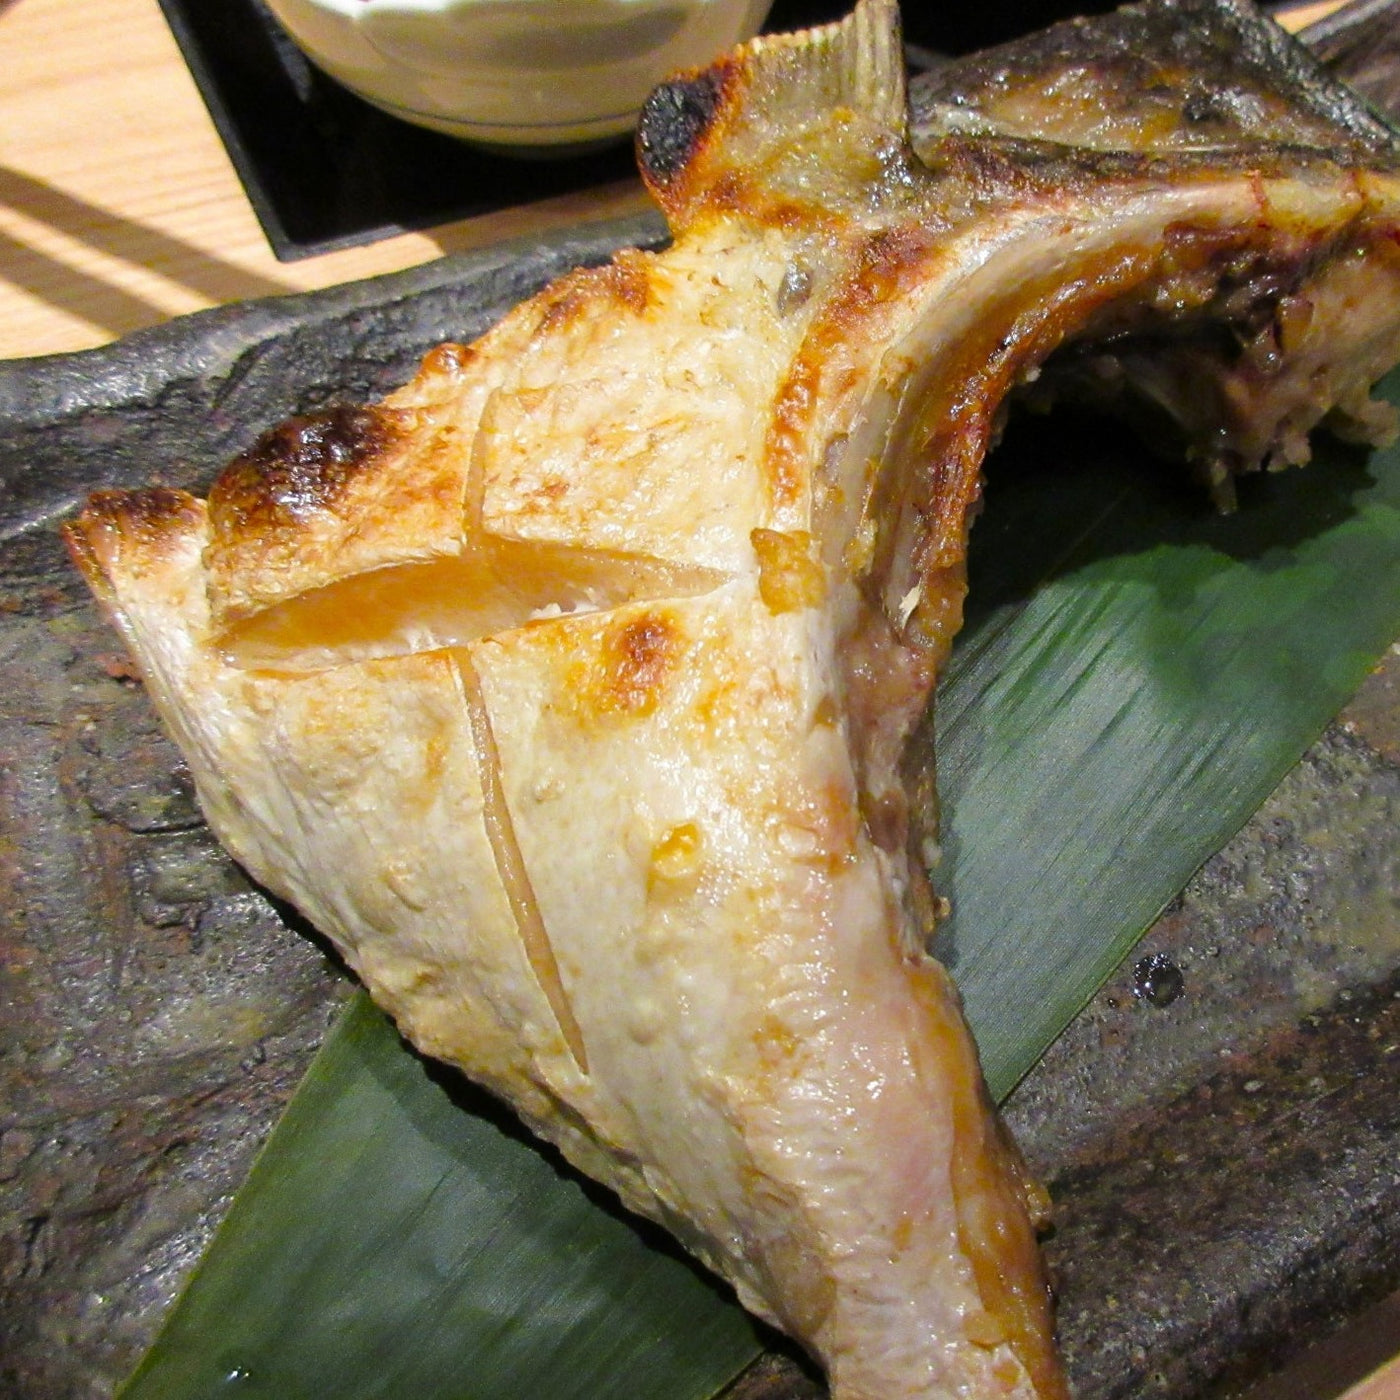 Hamachi Collar (Yellowtail Fish Collar) 鰤鱼颈部 900g - 1kg